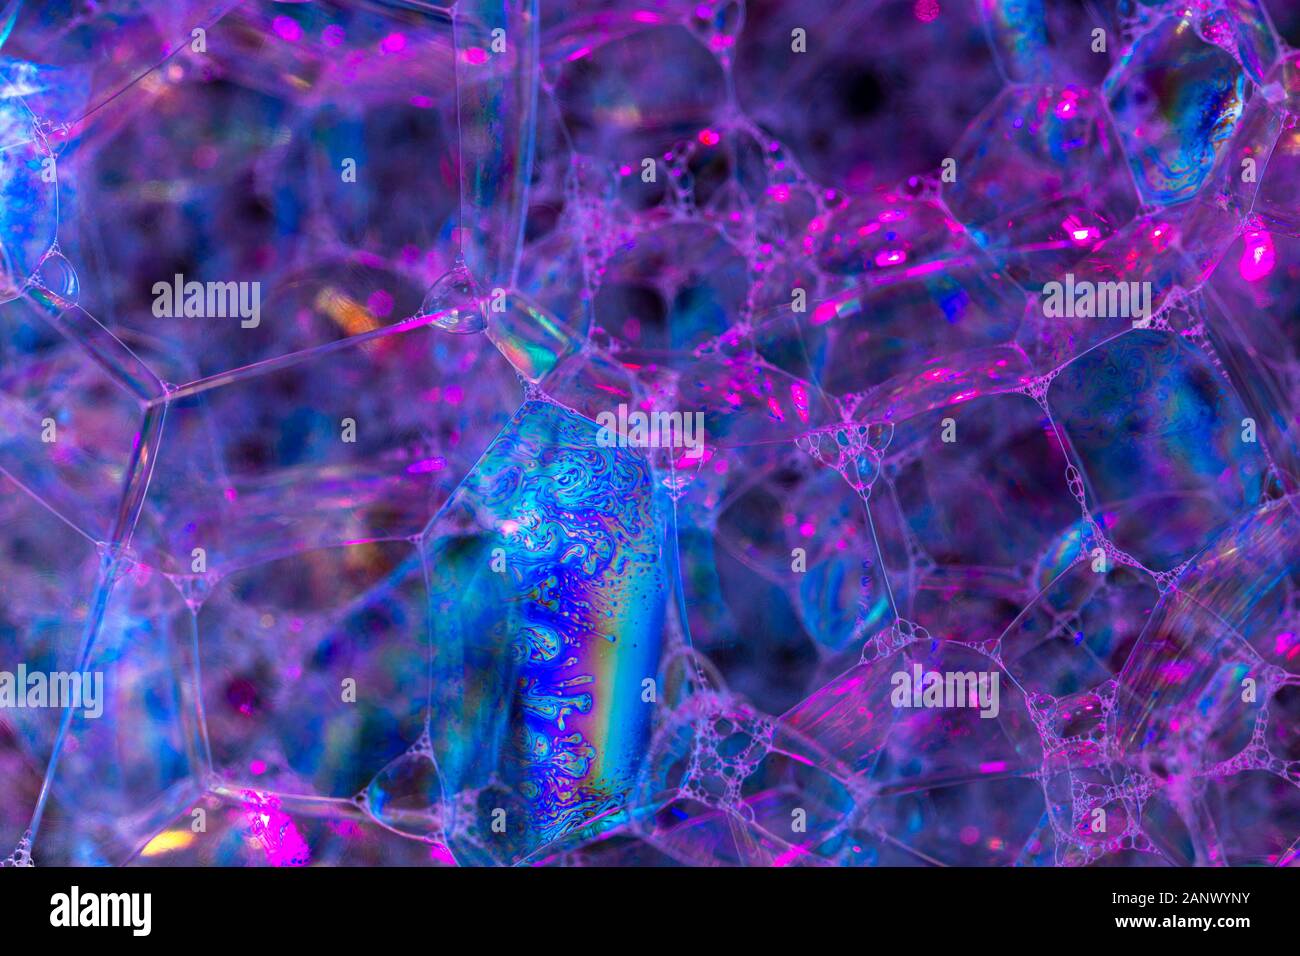 Kreative Zusammenfassung Hintergrund der Kette von Bläschen Struktur in dunklem Violett-blauen Tönen Stockfoto